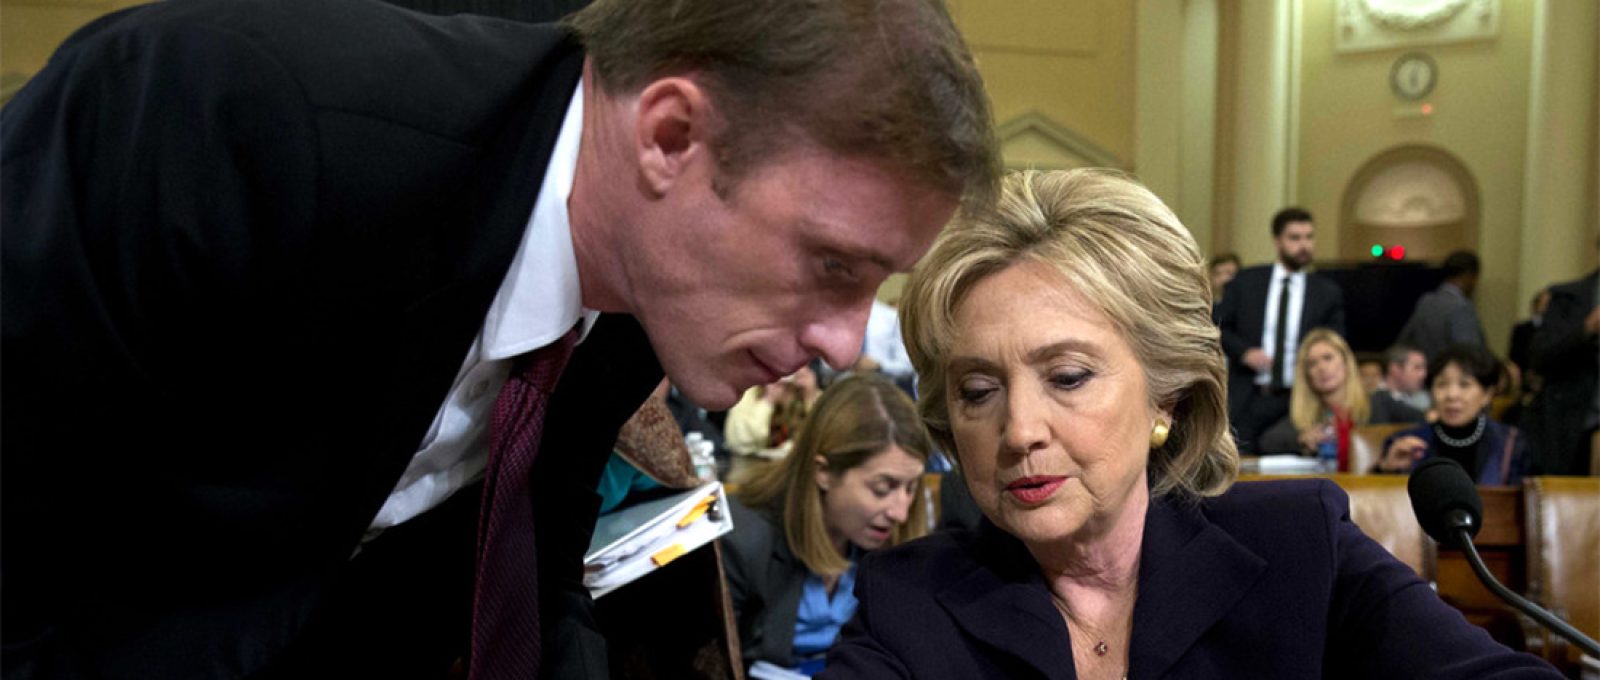 A então secretária de Estado Hillary Clinton conversa com Jake Sullivan durante uma pausa no depoimento no Capitólio em 2015 (Carolyn Kaster/AP).